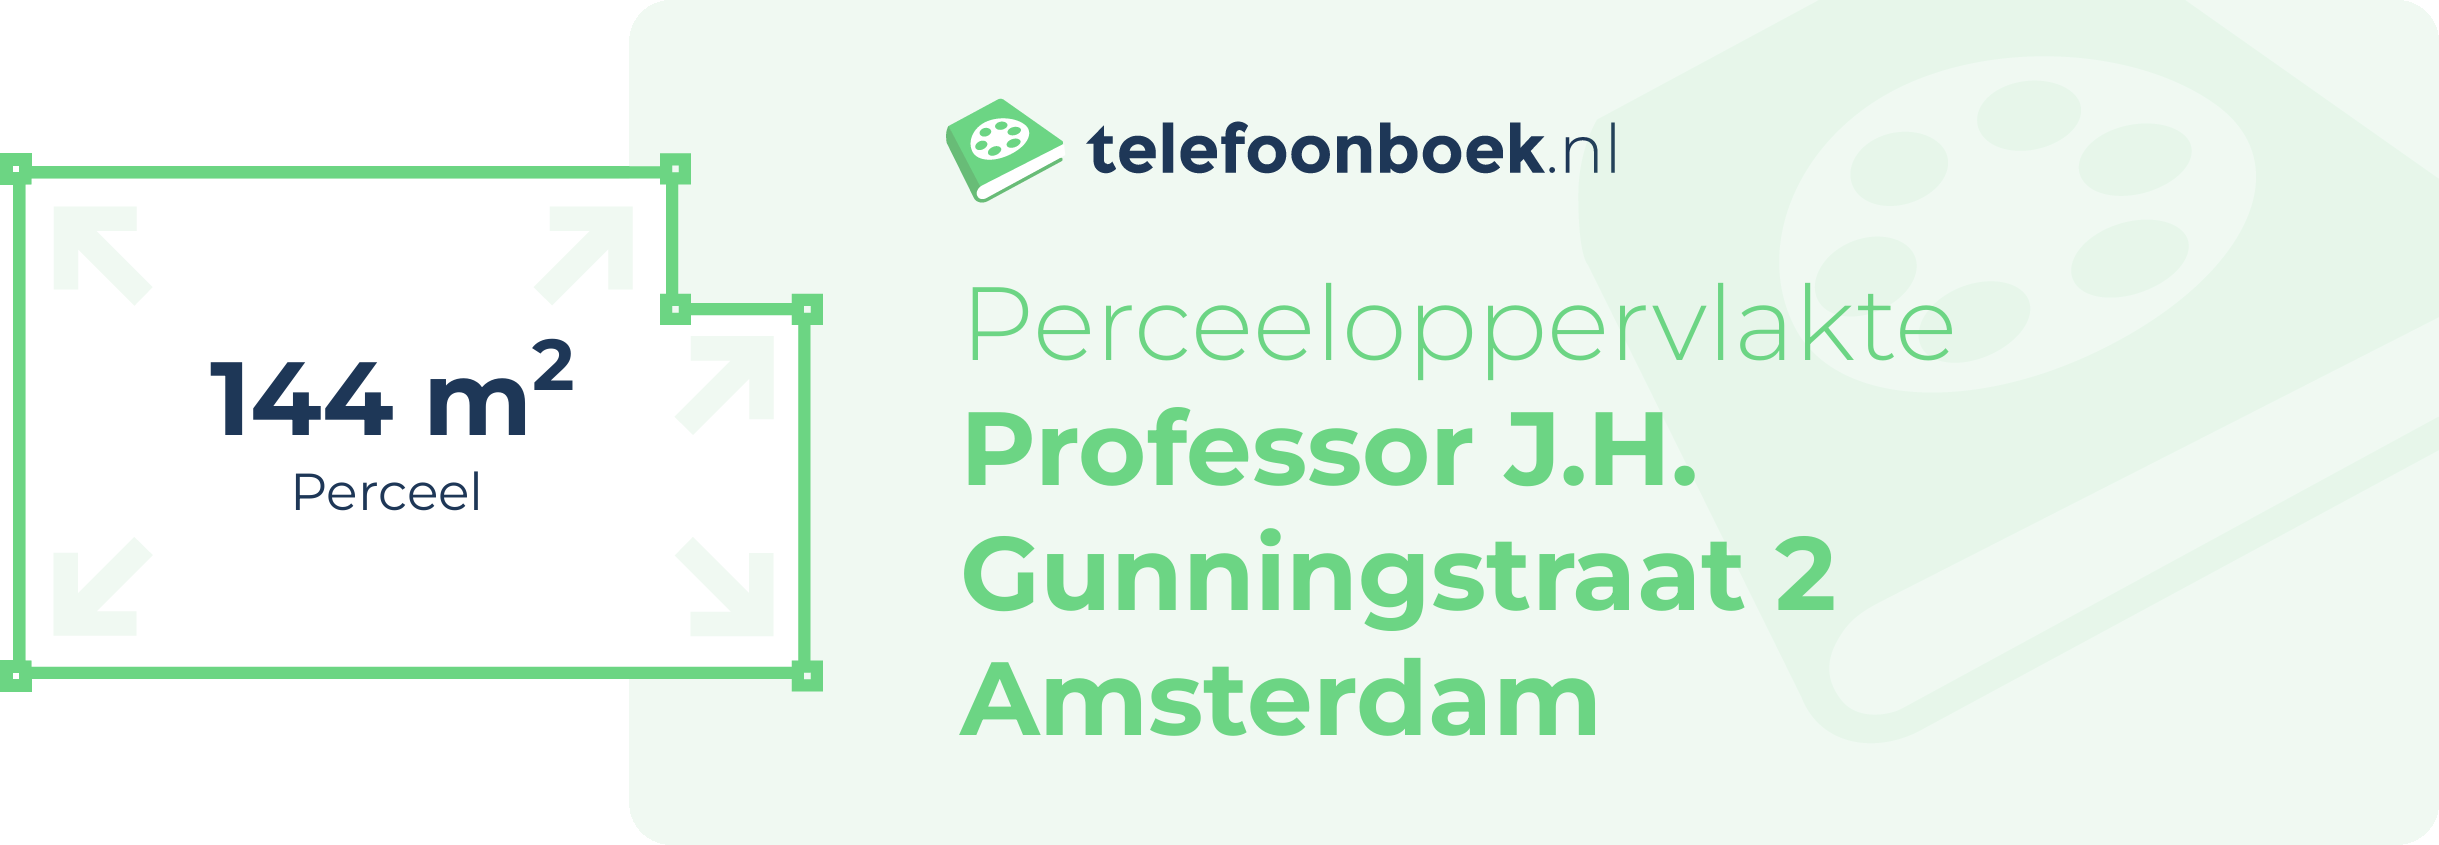 Perceeloppervlakte Professor J.H. Gunningstraat 2 Amsterdam